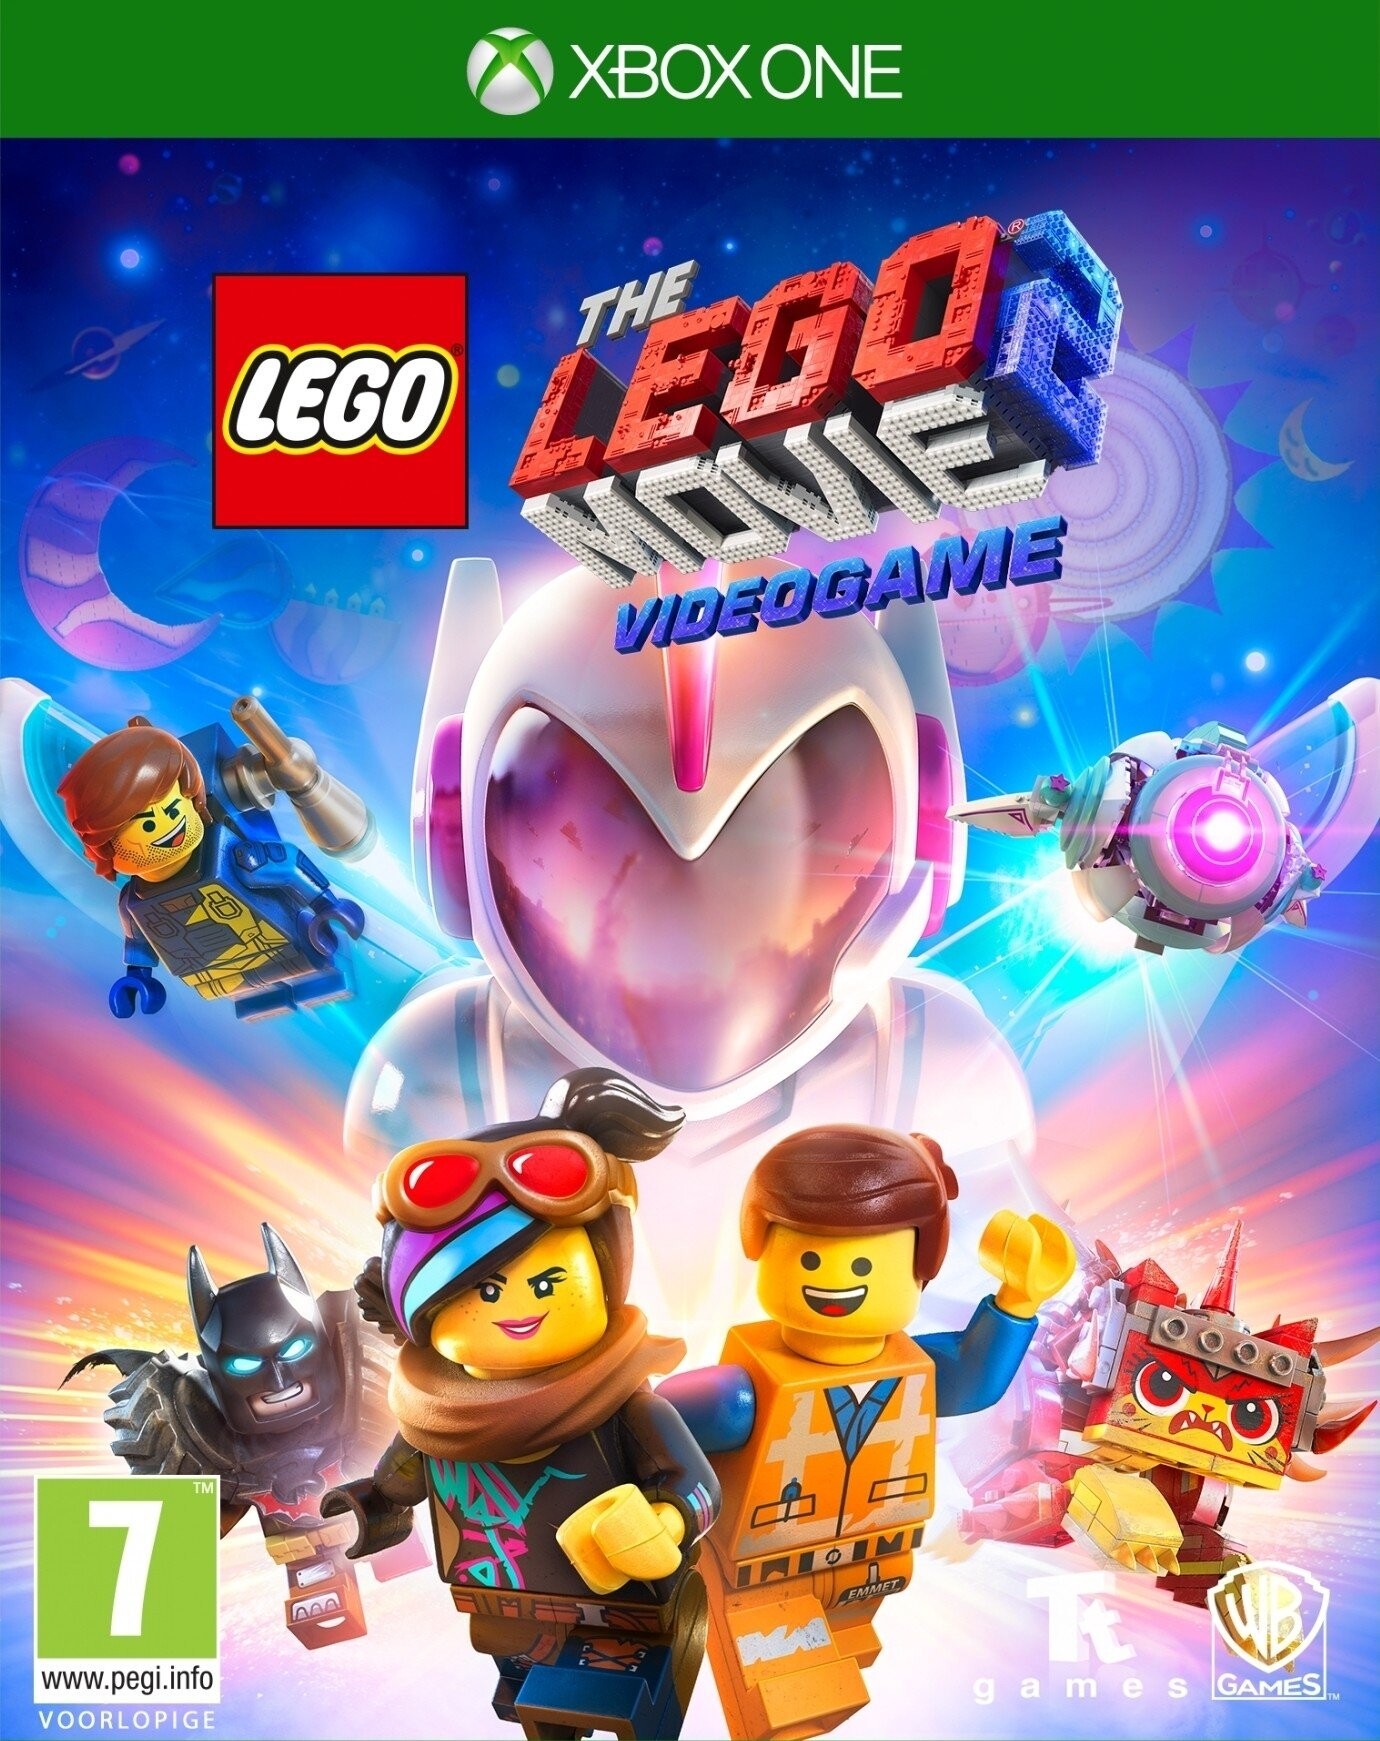 Sandsynligvis Leopard Martin Luther King Junior The Lego Movie 2 - Videogame xbox one → Køb billigt her - Gucca.dk